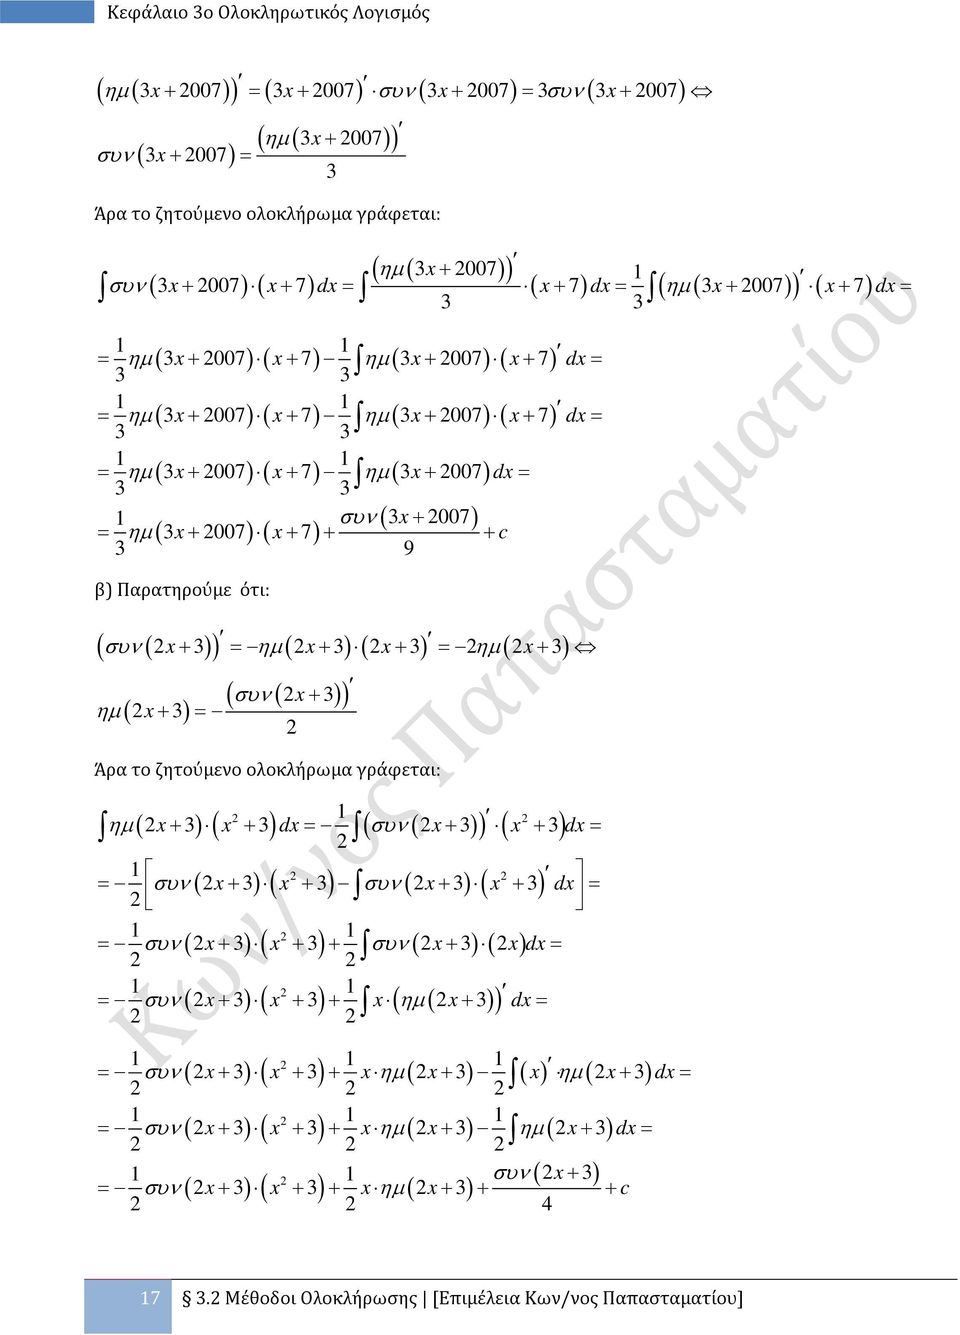 ηµ ( ) ( ) ηµ ( ) ηµ ( ) + = + + = + + = ( συν ( + ) ) Άρα το ζητούμενο ολοκλήρωμα γράφεται: ηµ ( ) ( ) d ( συν ( ) + + = ) ( ) + + d = = συν ( ) ( ) συν ( ) ( ) + + + + d = = συν ( + ) ( + ) + συν (